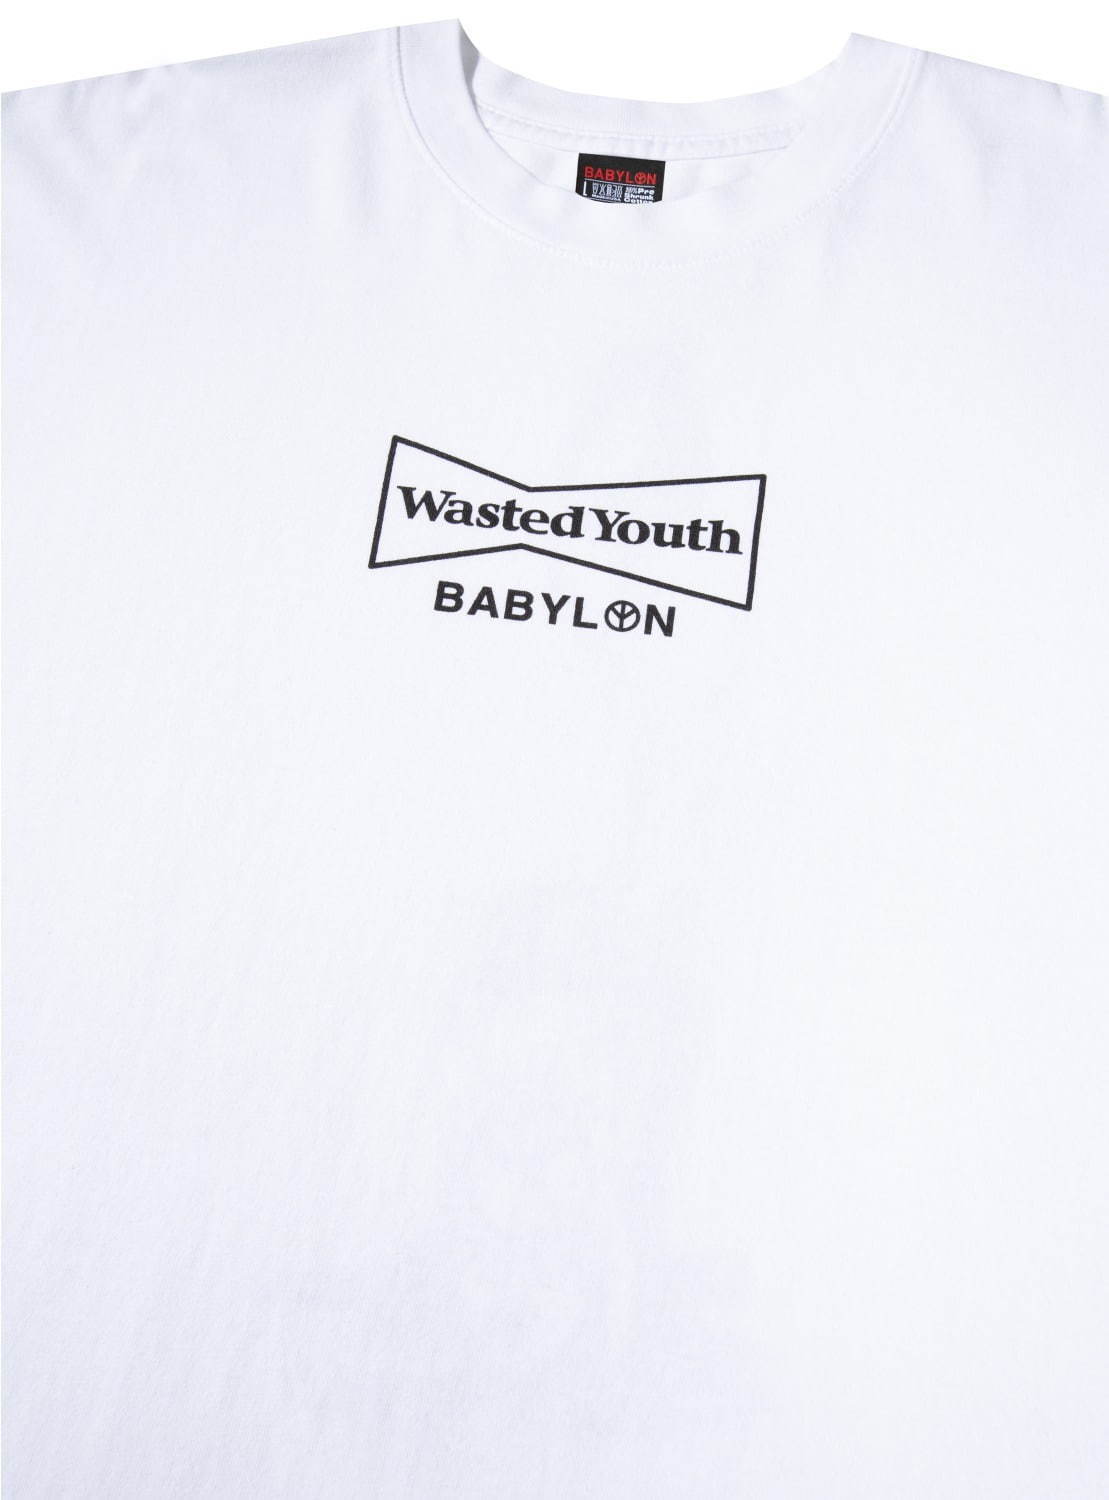 BABYLON wastedyouth Tシャツ L |